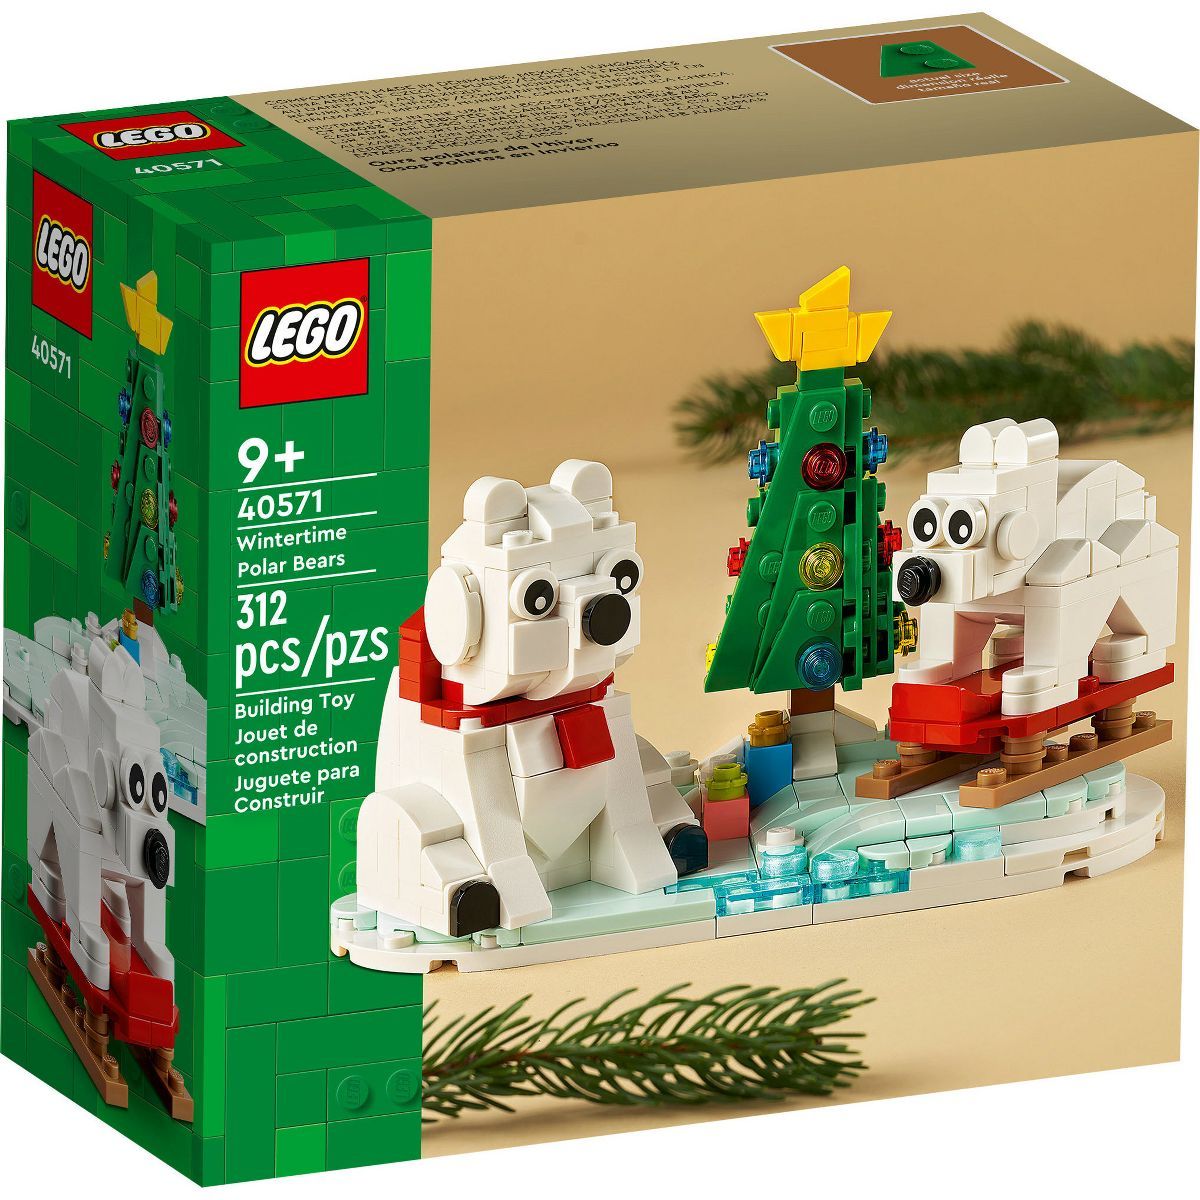 LEGO Wintertime Polar Bears Stocking Stuffer 40571 | Target